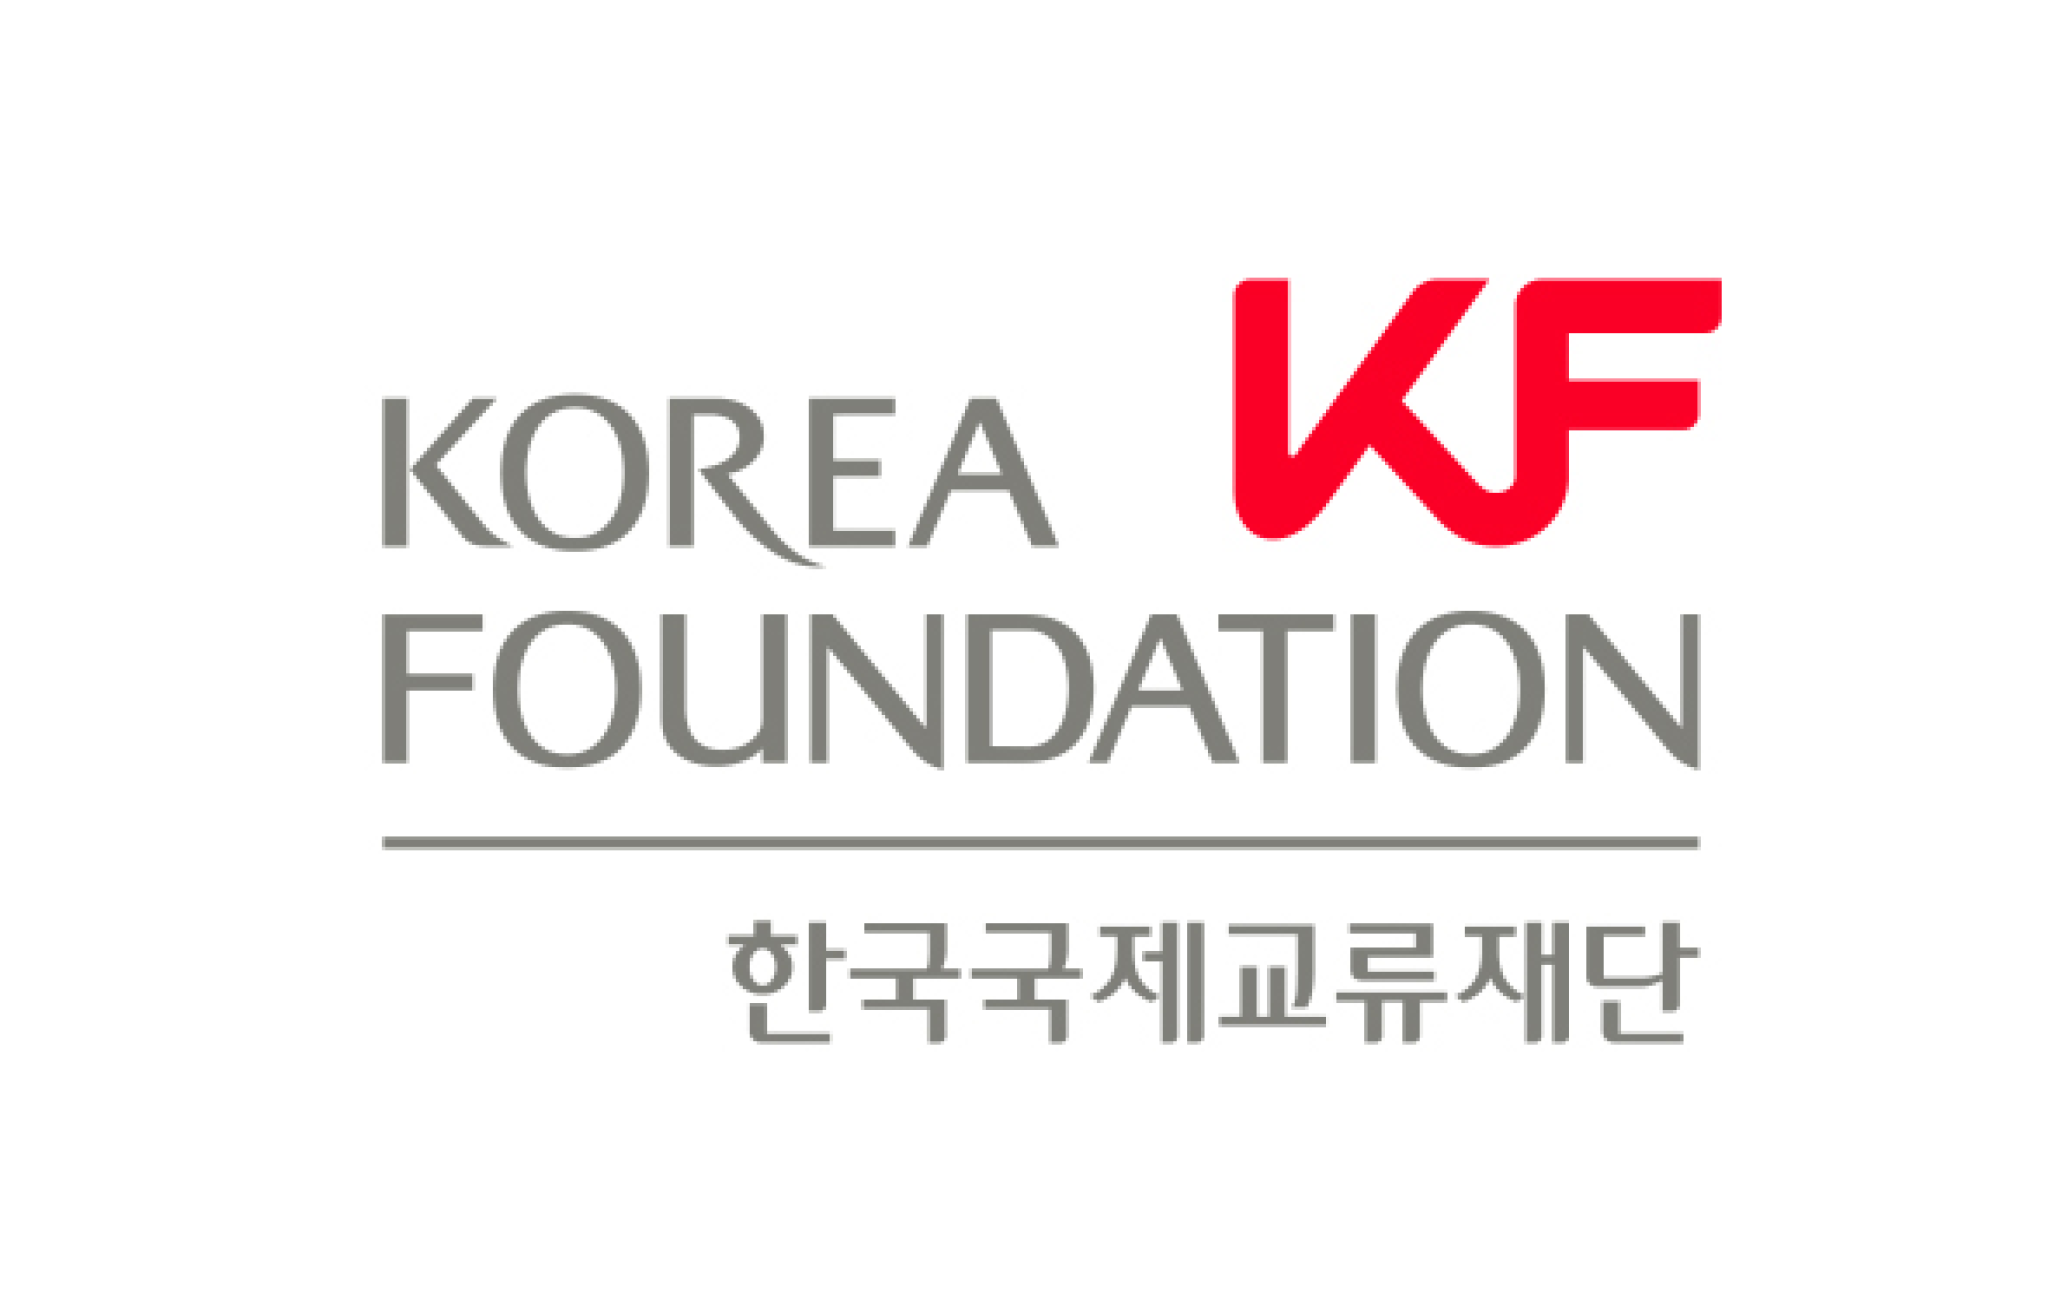 Korea Foundation Logo